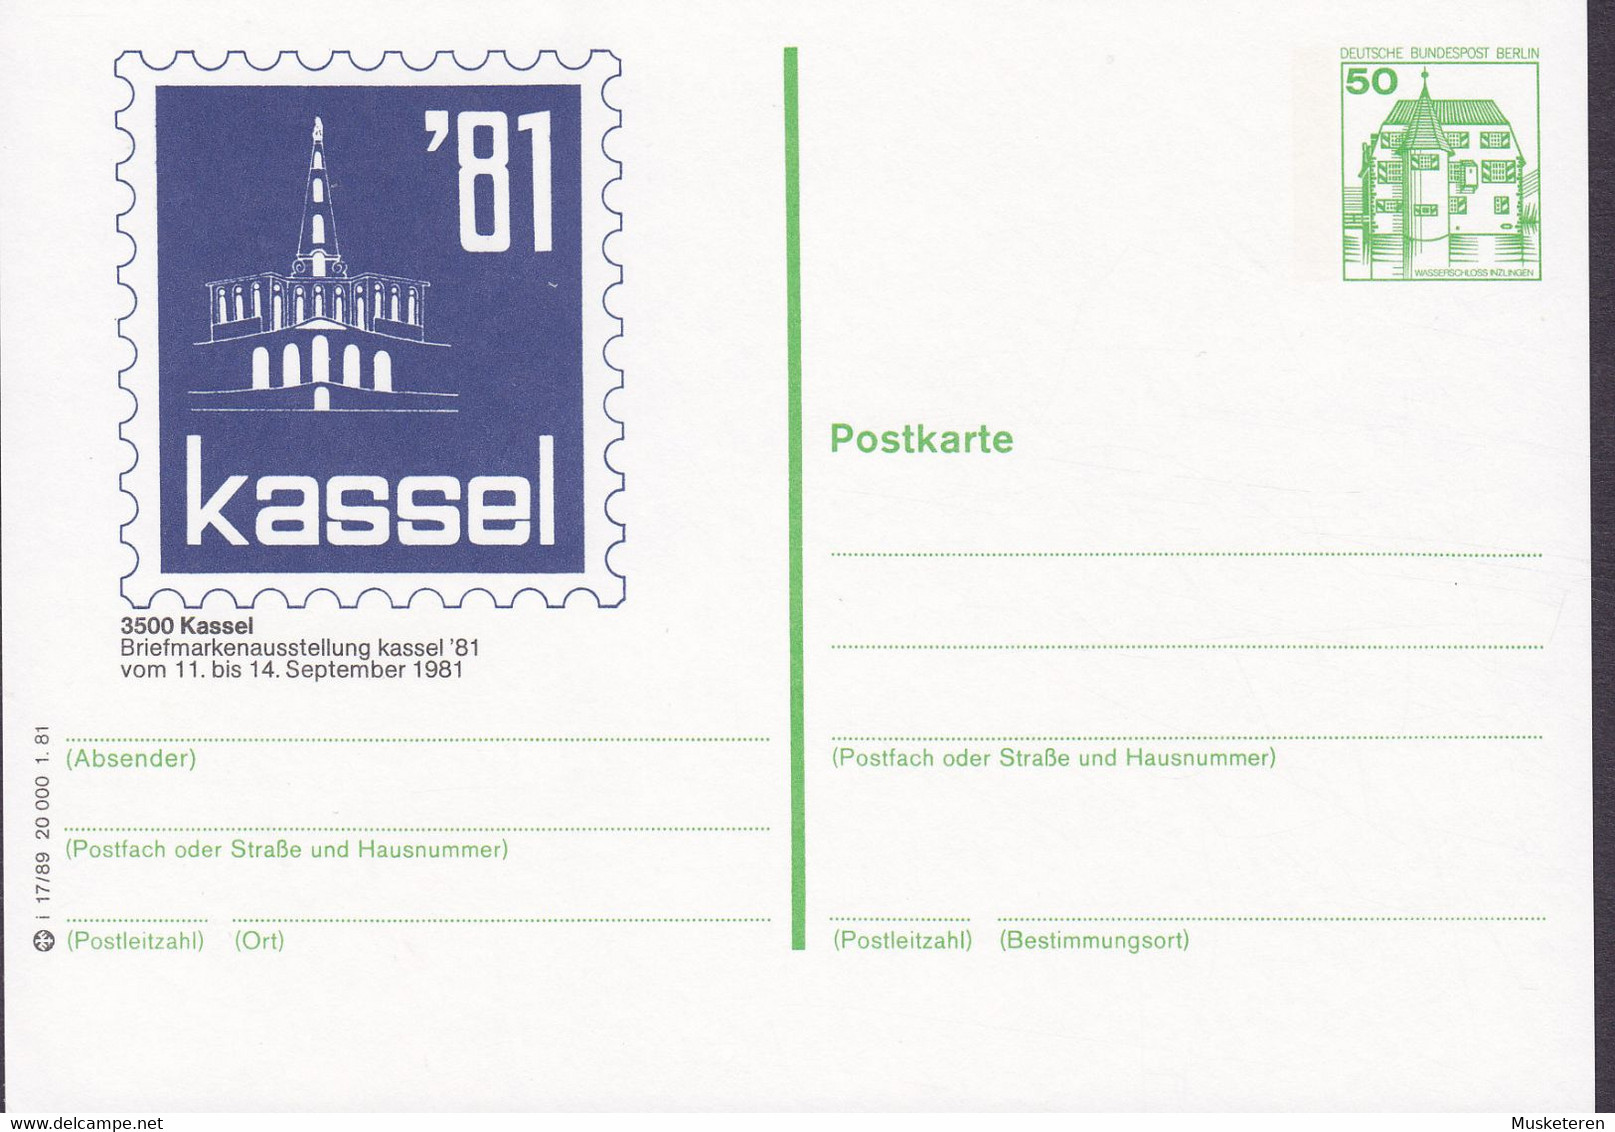 Berlin Postal Stationery Ganzsache 50 Pf. Wasserschloss Inzlingen PRIVATE Print Briefmarkenausstellung KASSEL '81 Unused - Private Postcards - Mint